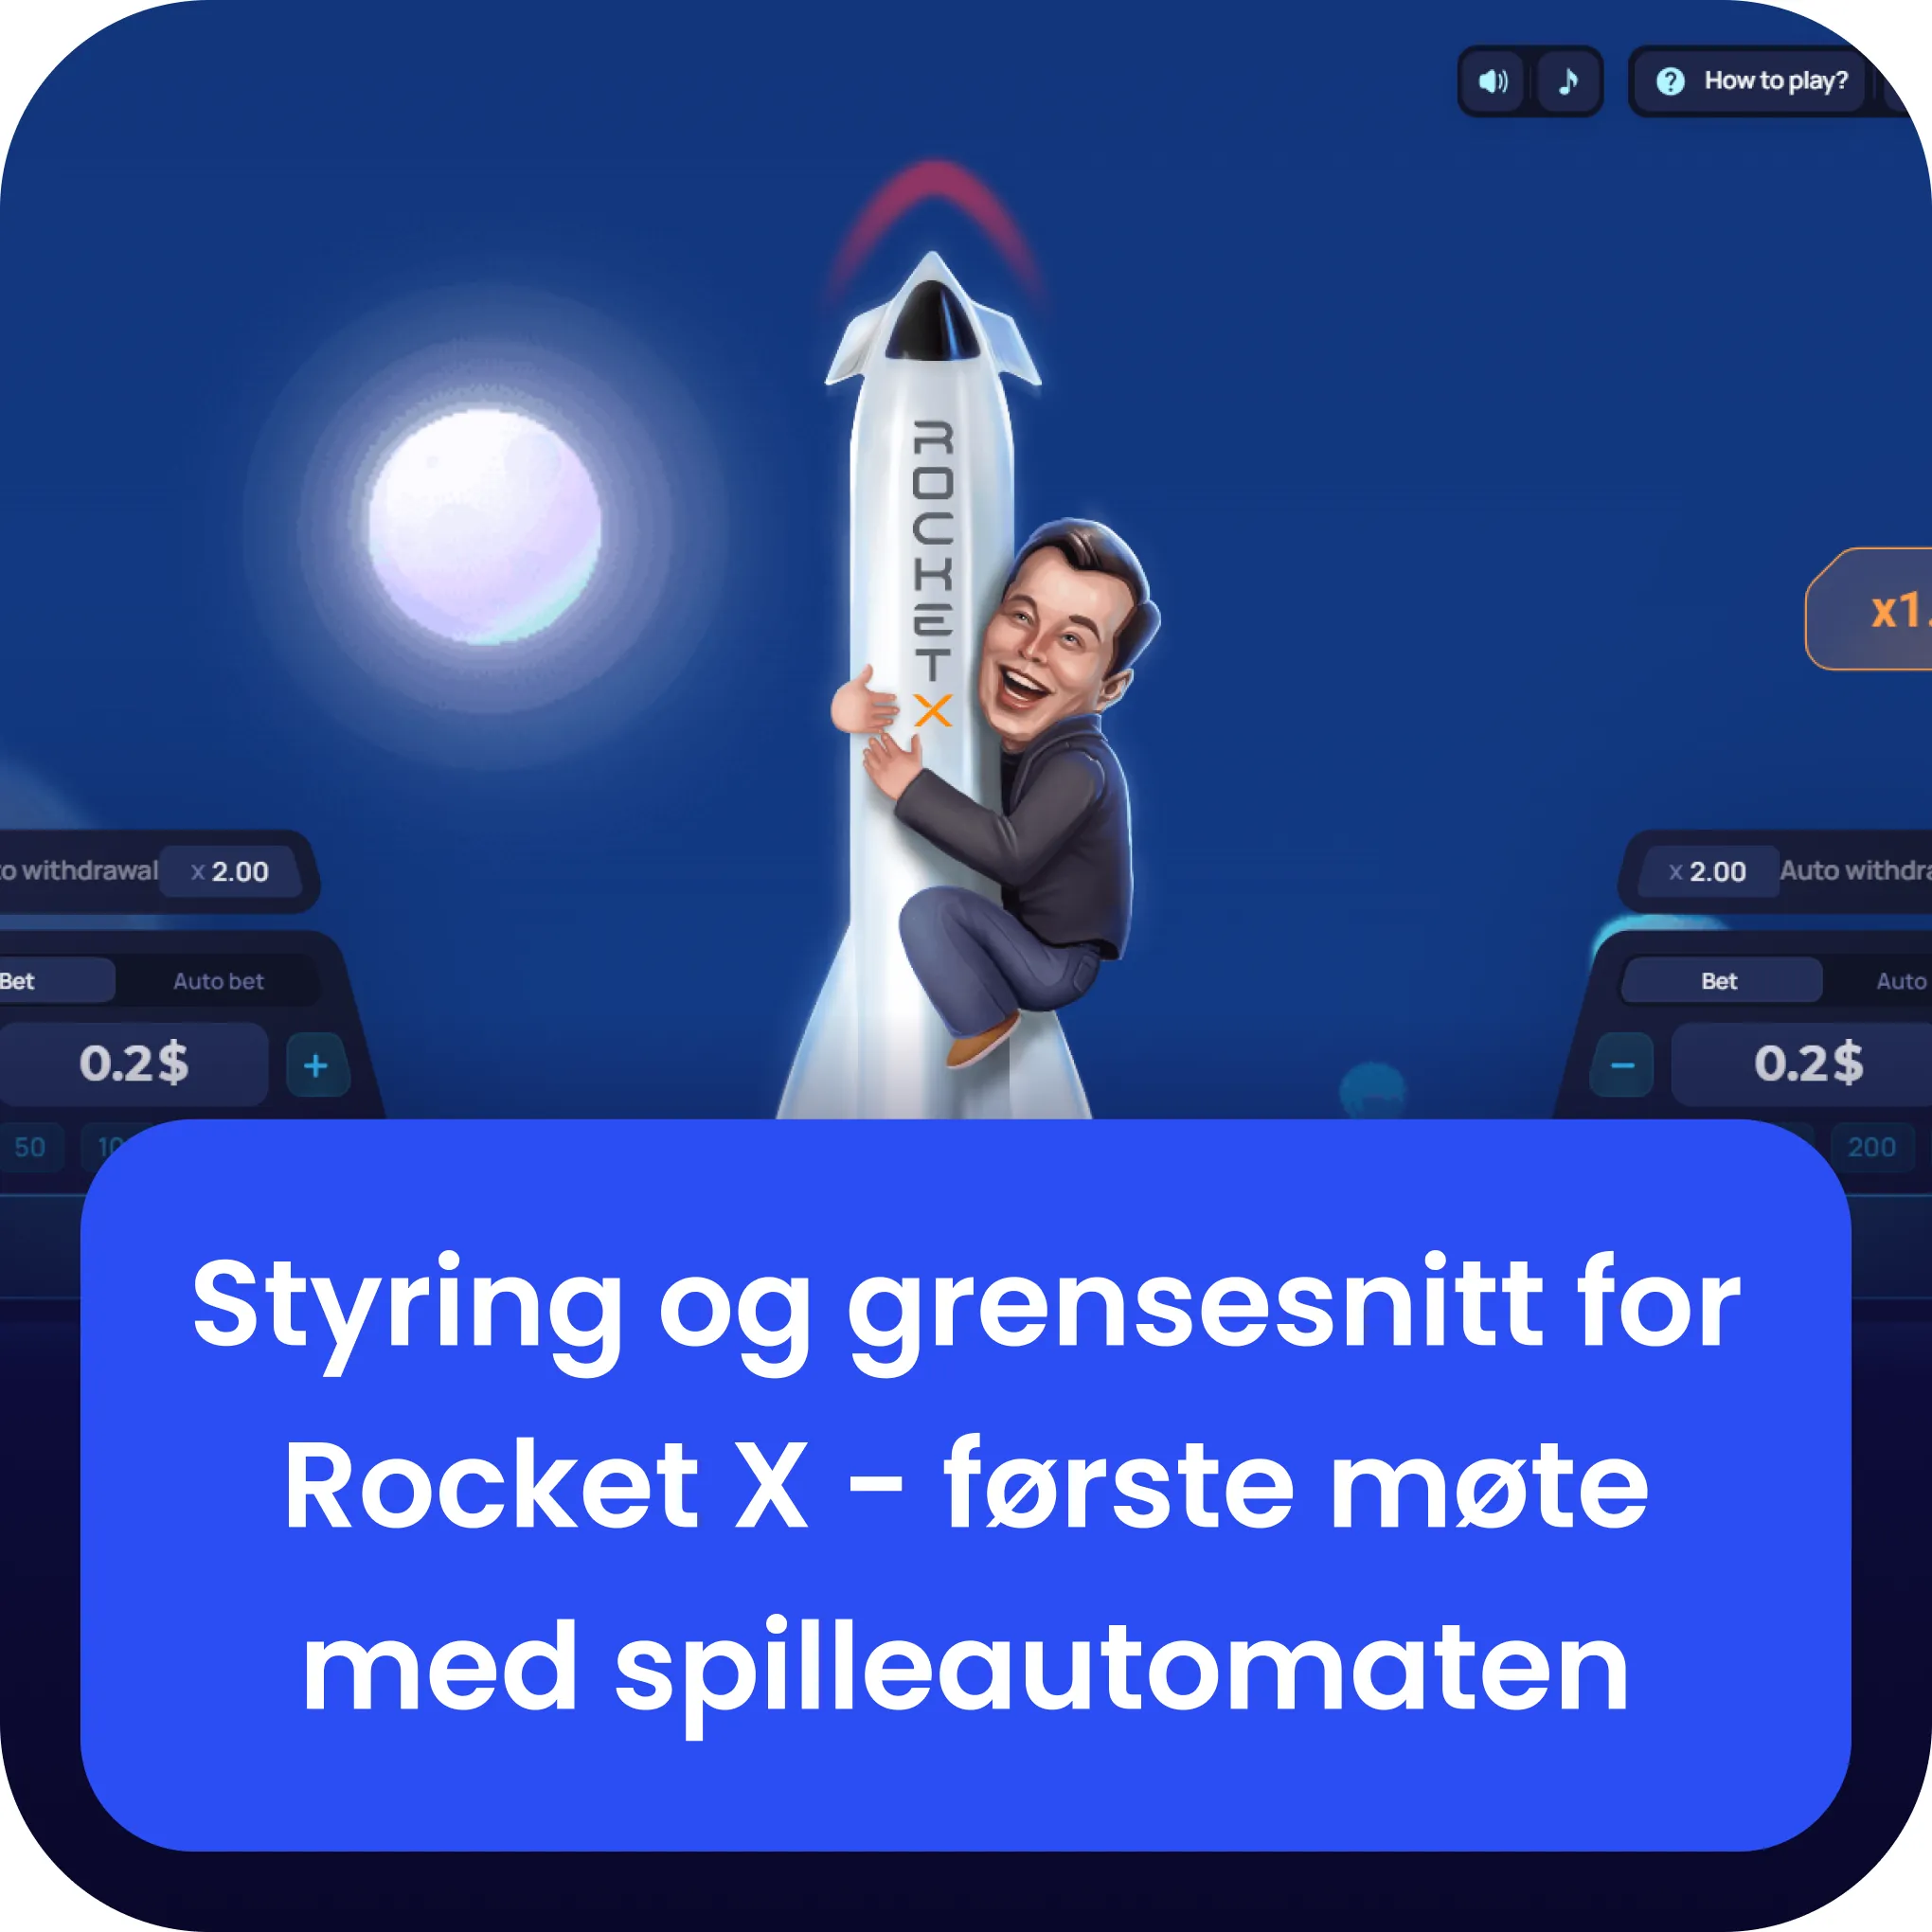 dtyring og grensesnitt for rocket x